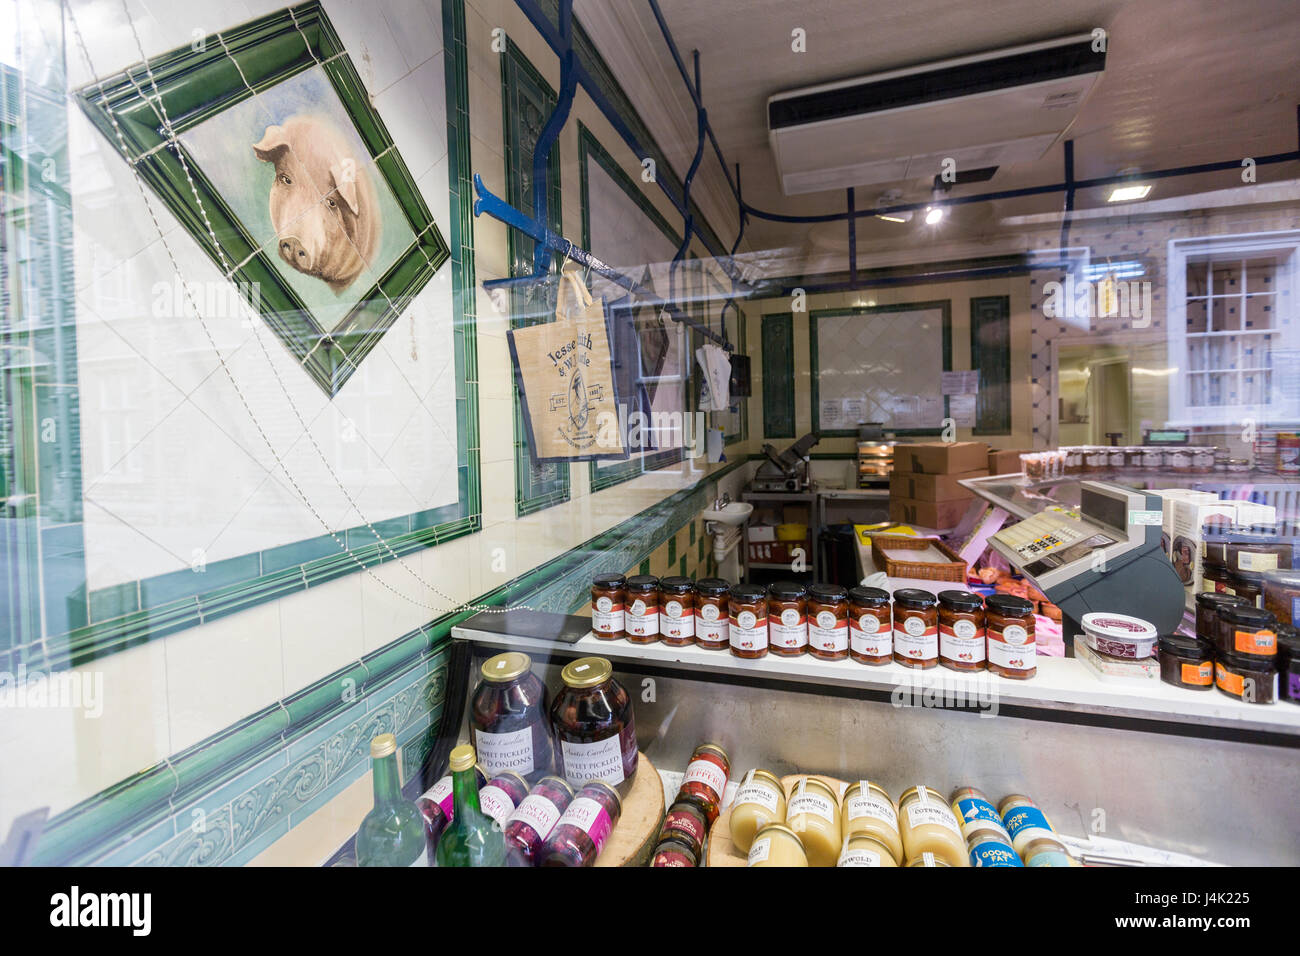 L'intérieur Jesse Smith, Black Jack, Rue des Bouchers de qualité et des magasins de vente de matériaux de la viande en gros dans les Cotswolds, Cirencester, Gloucestershire, Angleterre Banque D'Images